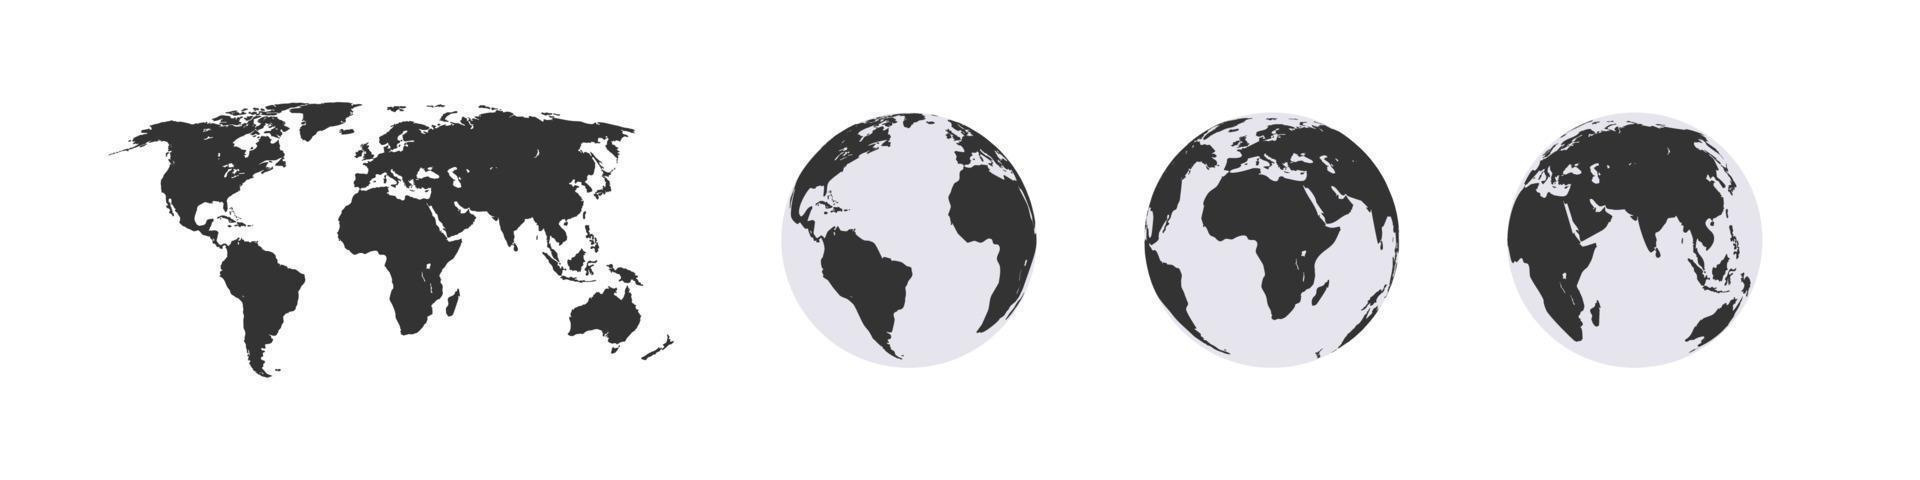 mondo carta geografica e globi. globi di terra. vettore illustrazione moderno semplice stile